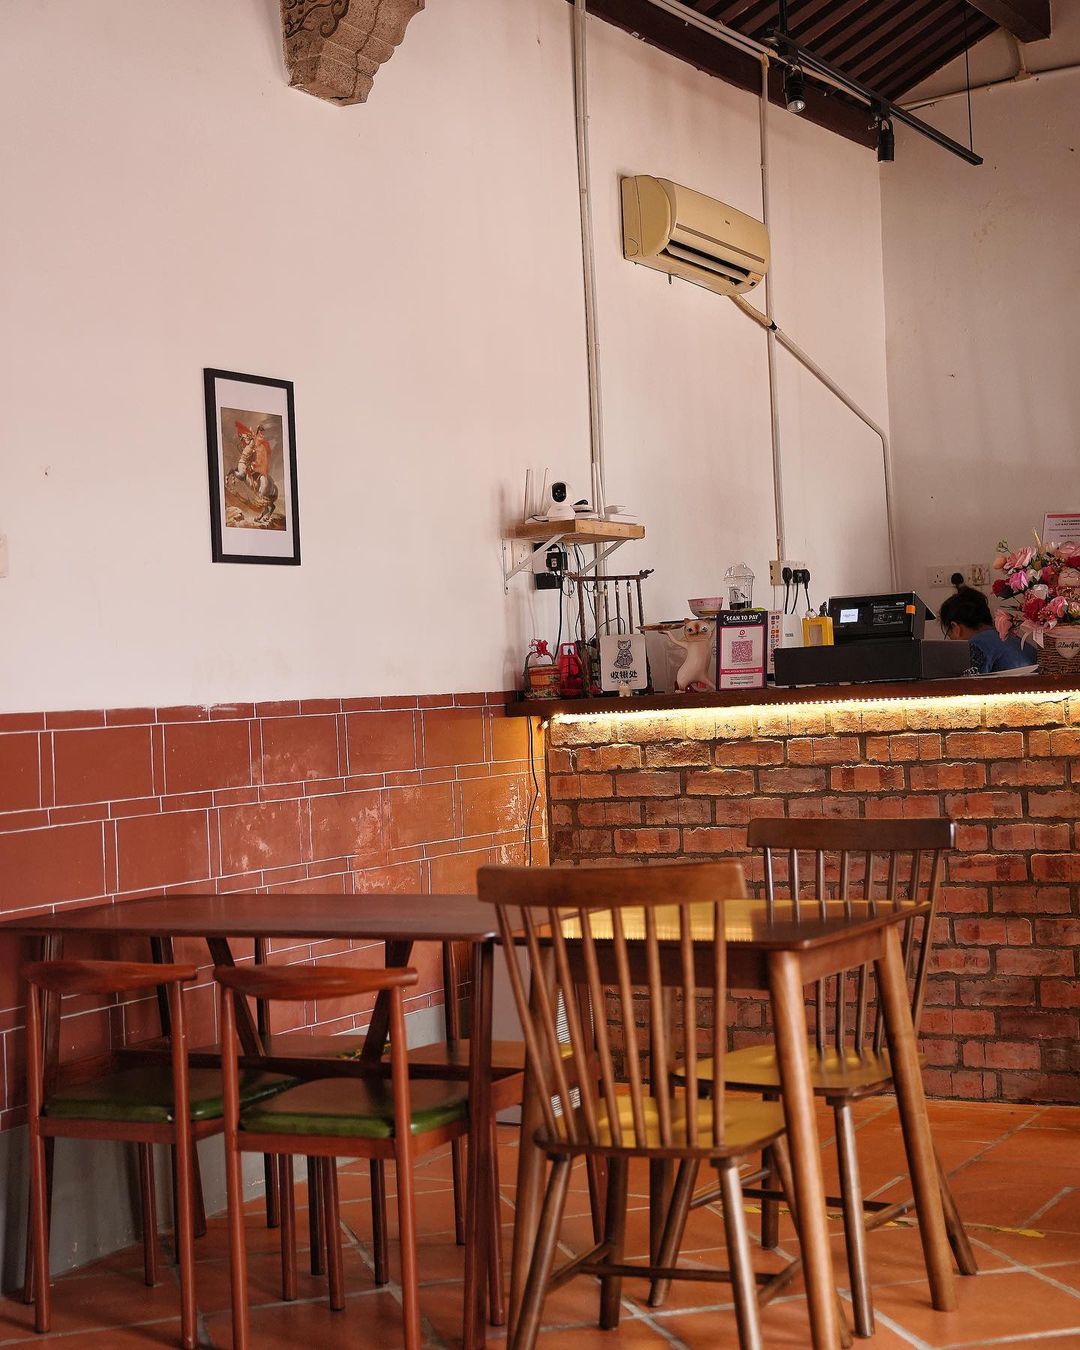 Catonomy penang - cafe inside